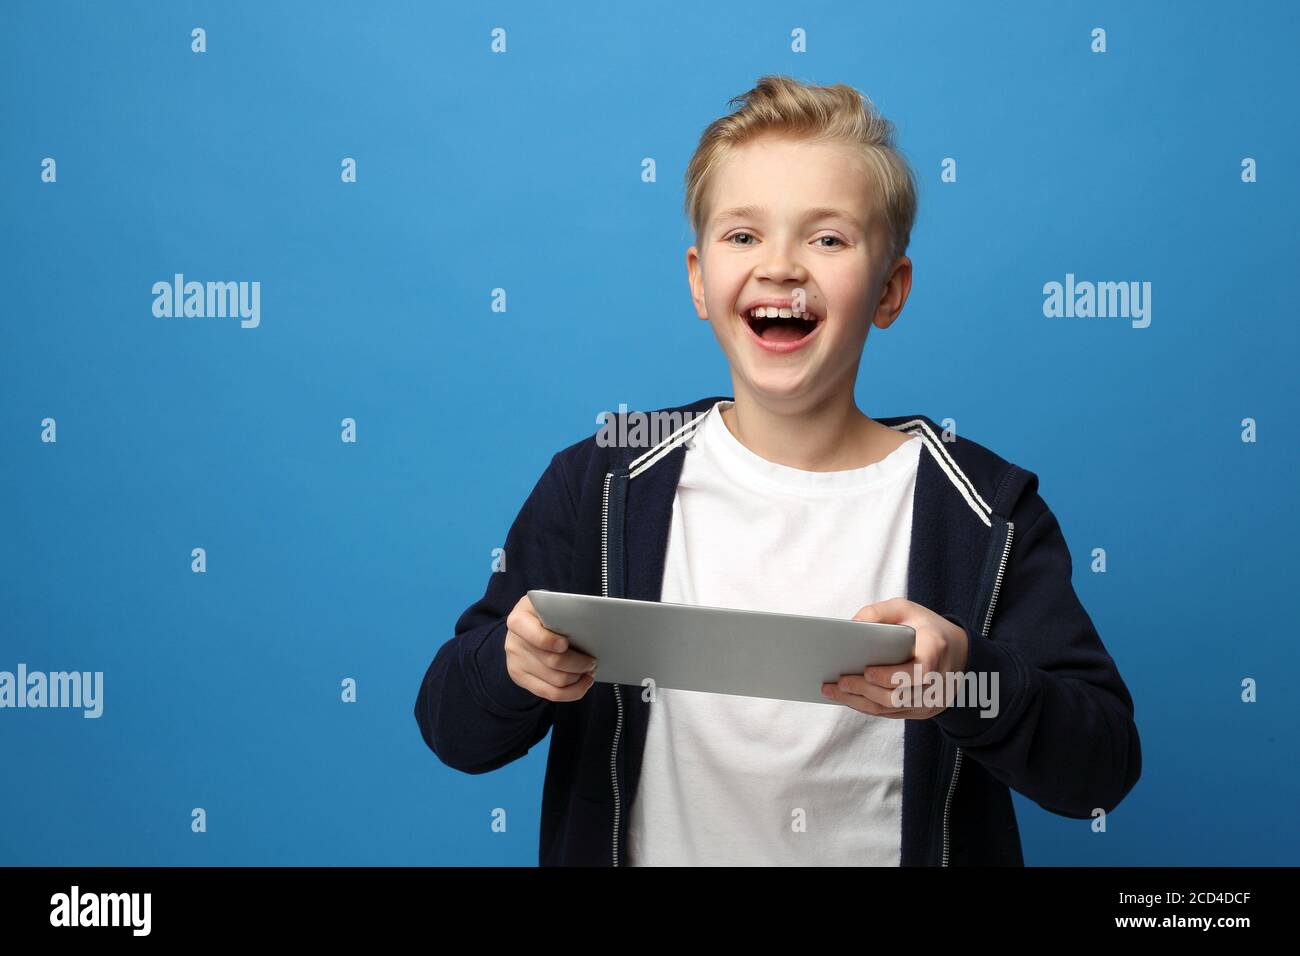 Überrascht Kind Gesicht, Emotionen. Der überraschte Junge sieht auf dem Tablet. Ein Kind mit einem Tablet. Lächelnder Junge mit einem Tablet. Porträt eines Kindes auf einem Stockfoto